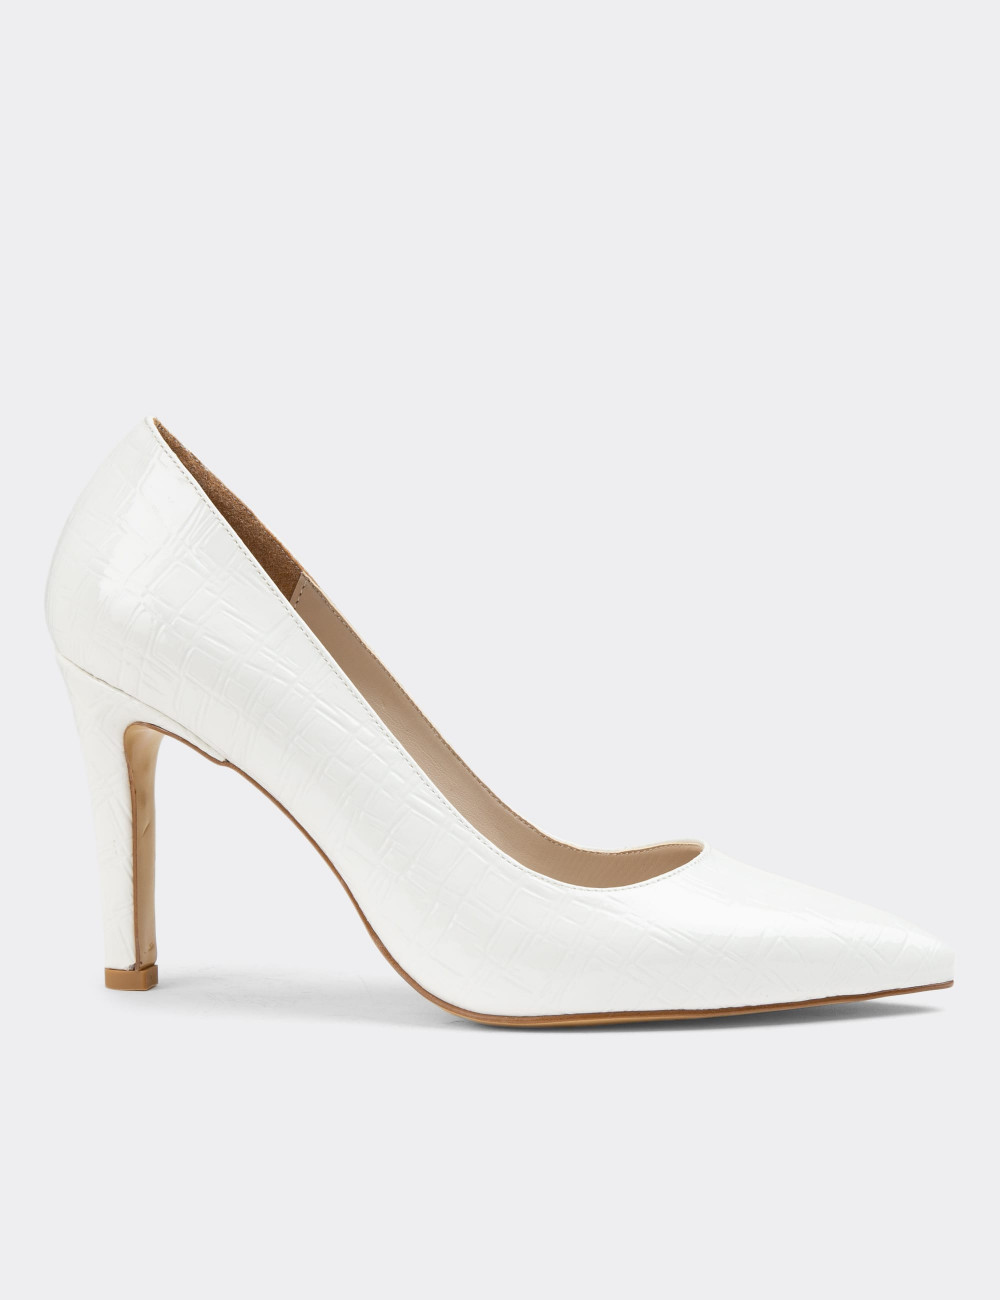 Rugan Beyaz Stiletto Kadın Topuklu Ayakkabı - 0K101ZBYZM01